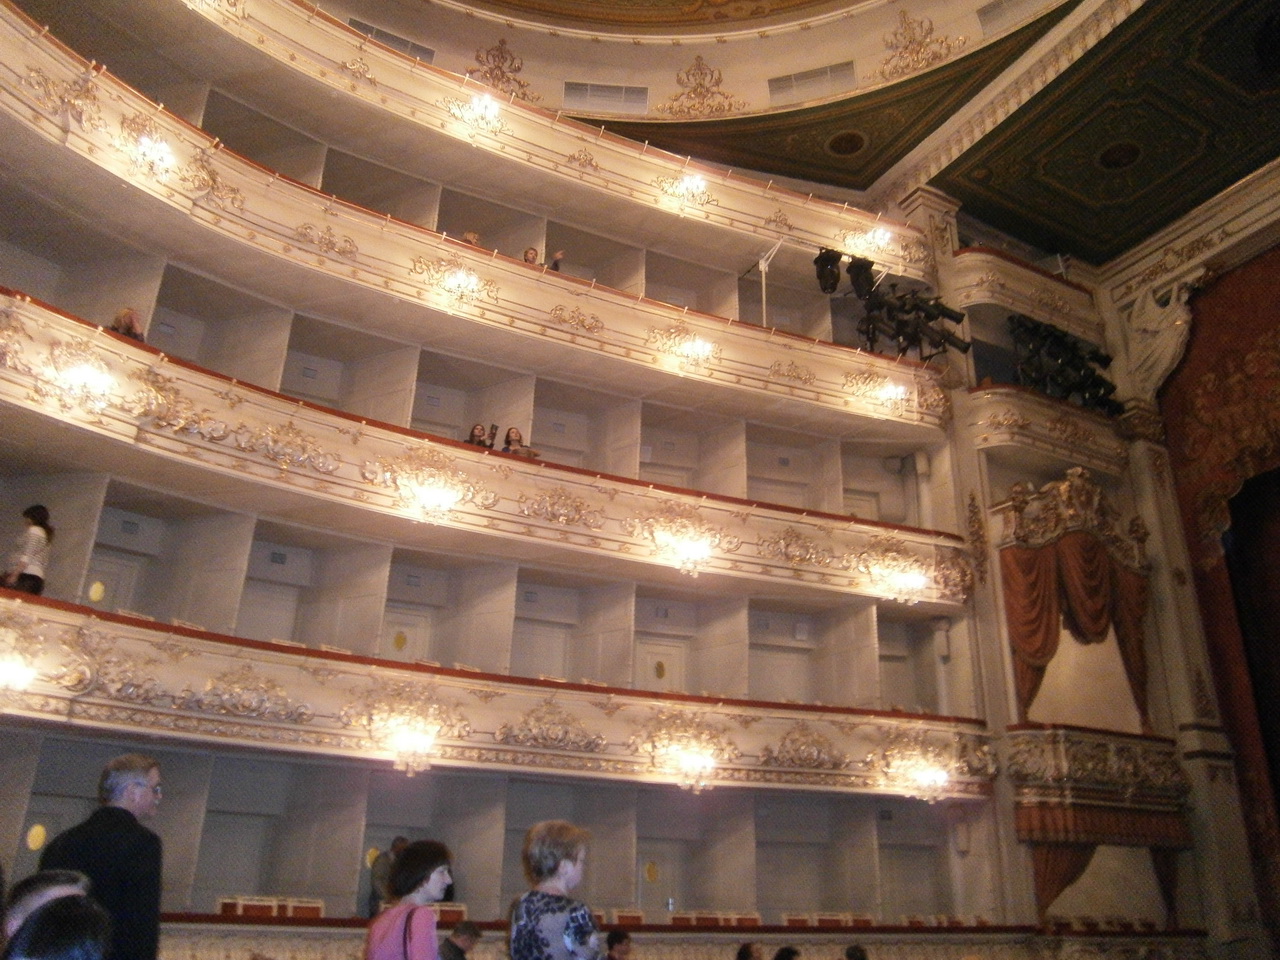 театр драмы кемерово зал